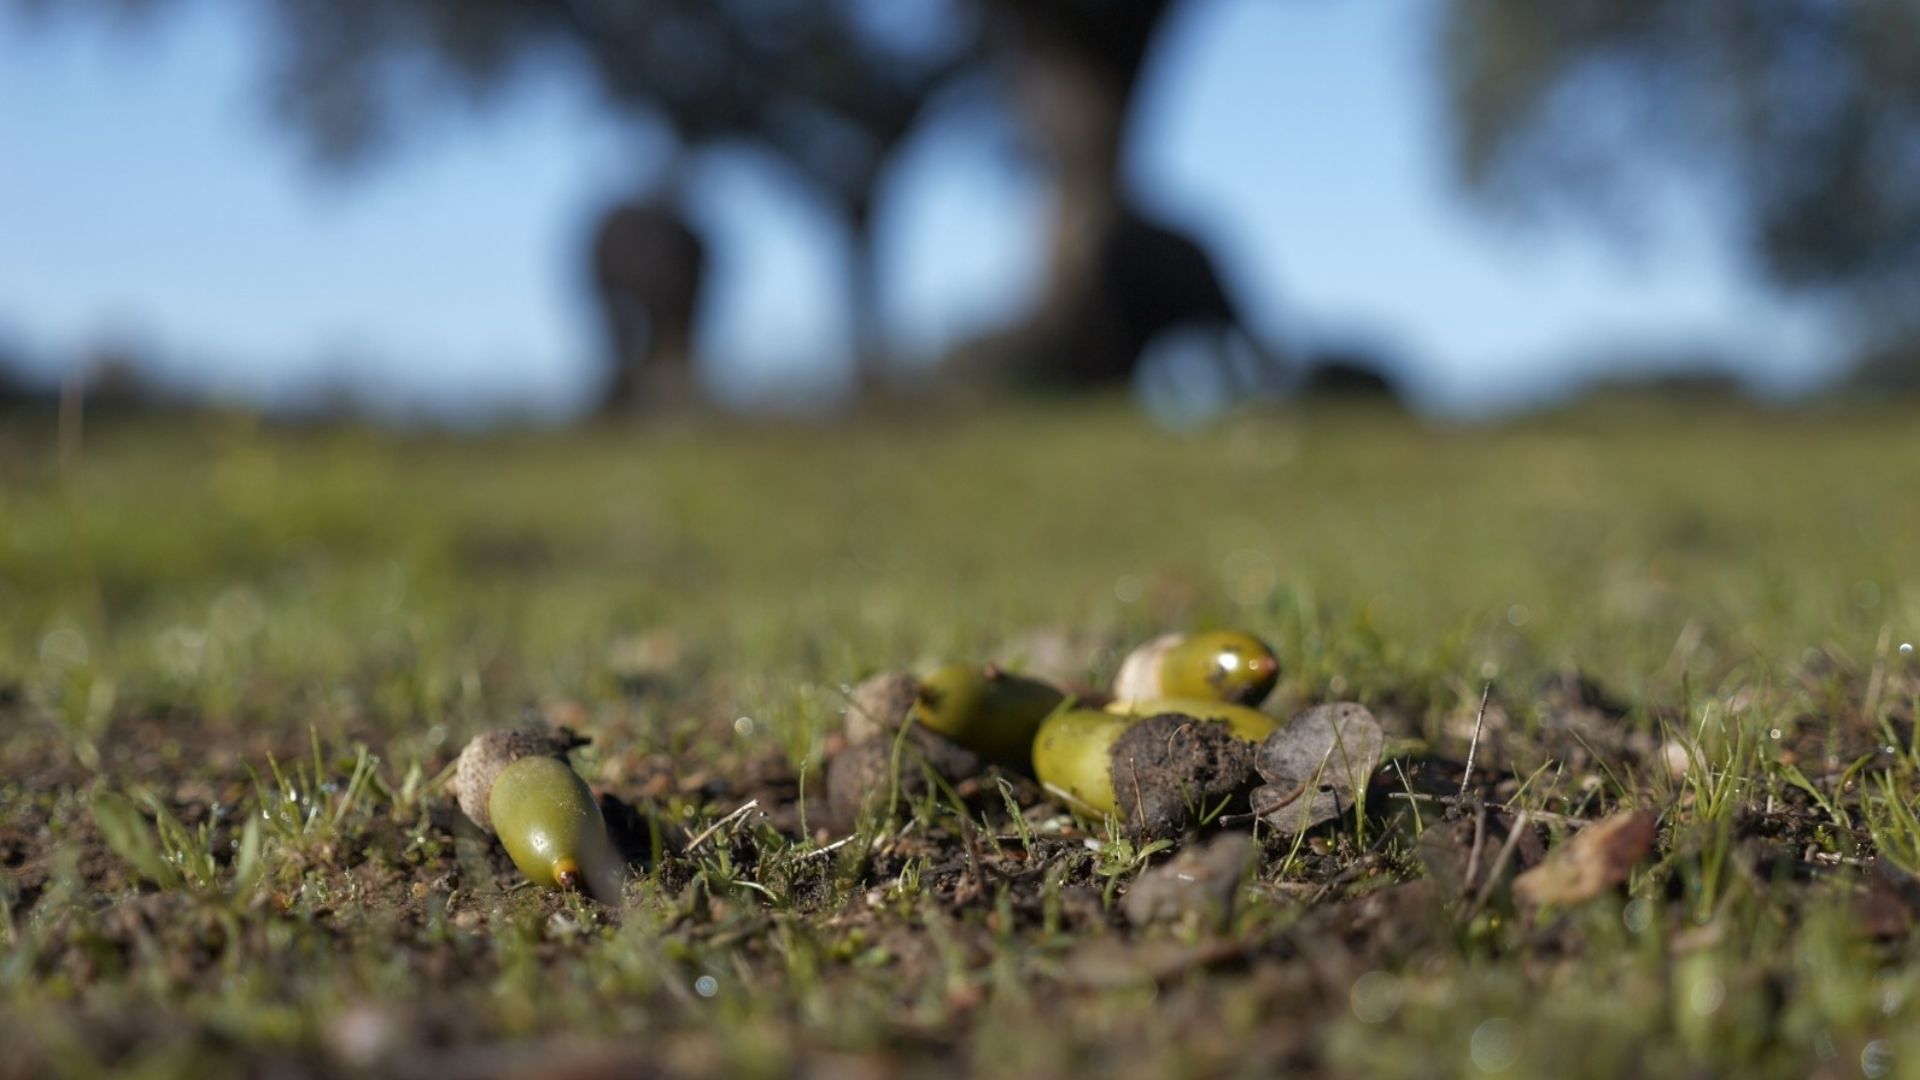  Fresh acorns ready for snuffling. /Ken Browne/CGTN